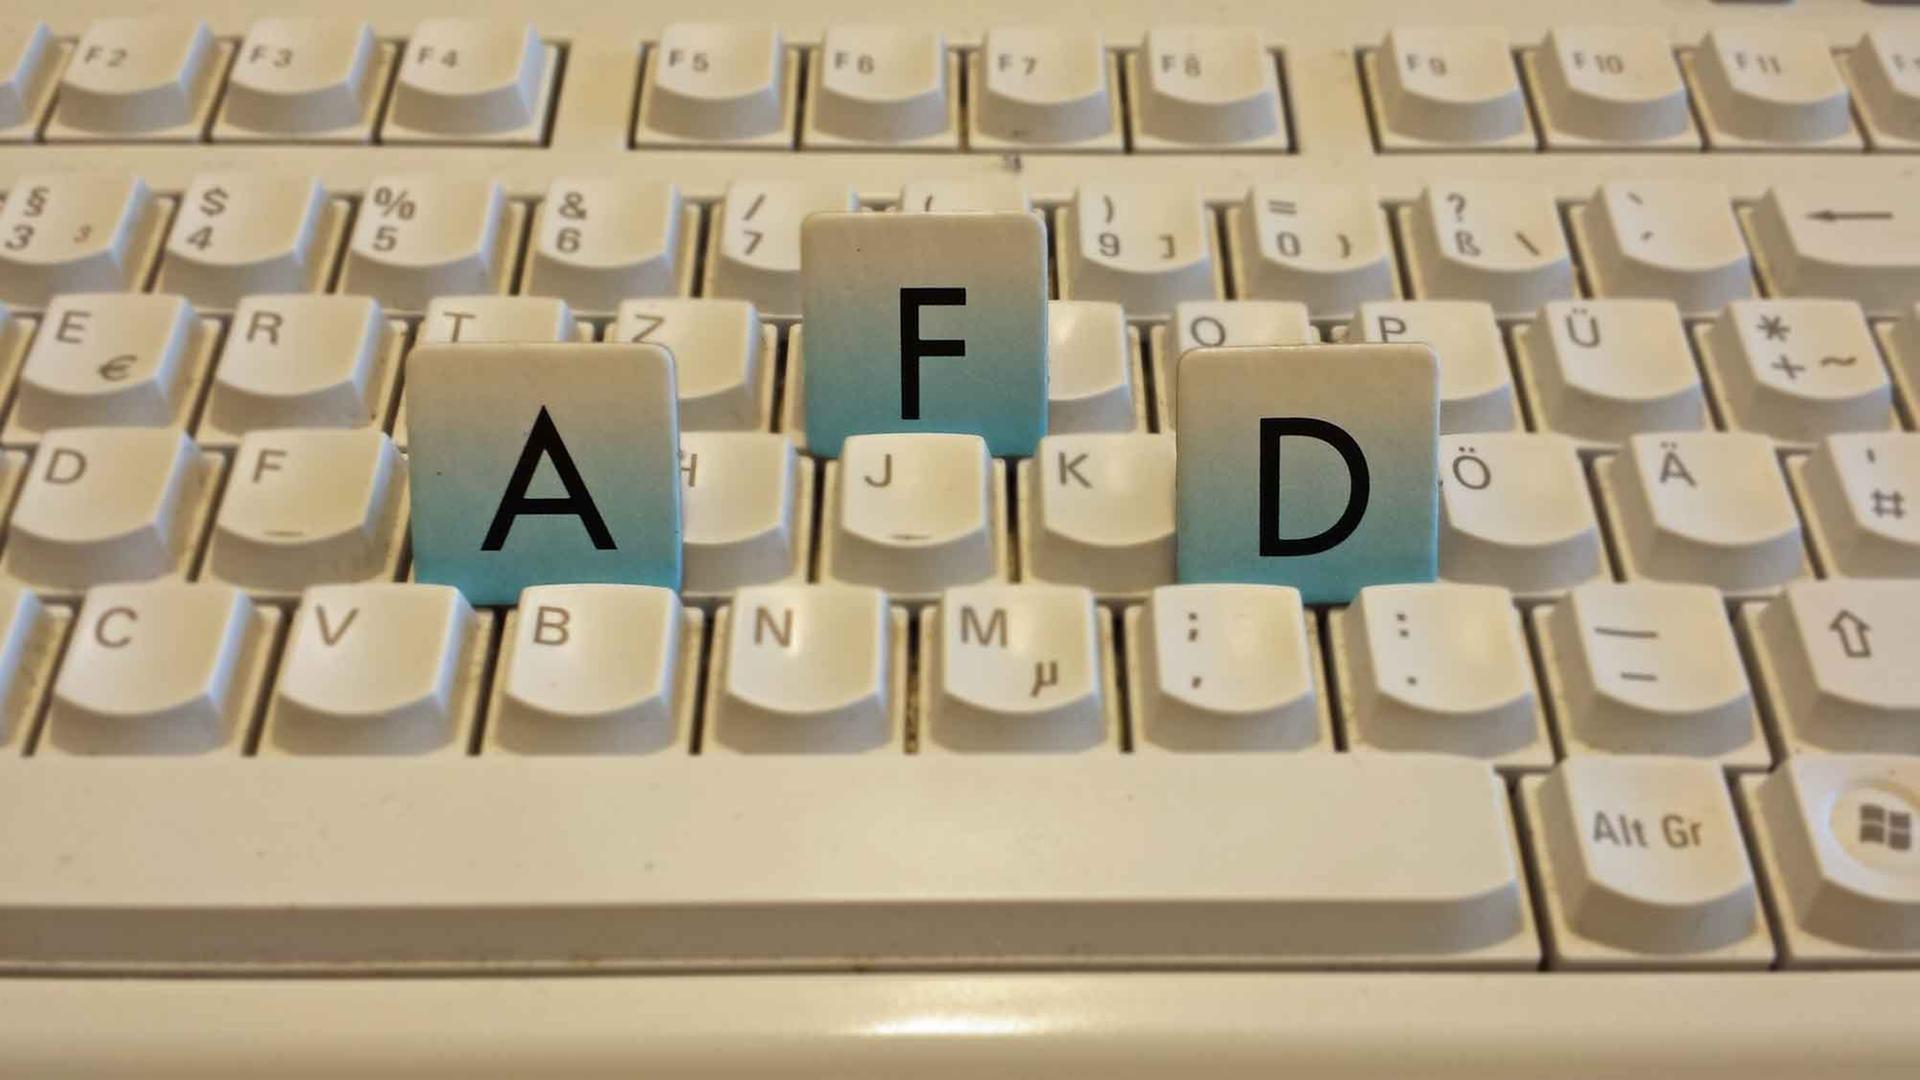 Die Buchstaben "A", "F" und "D" auf einer Tastatur